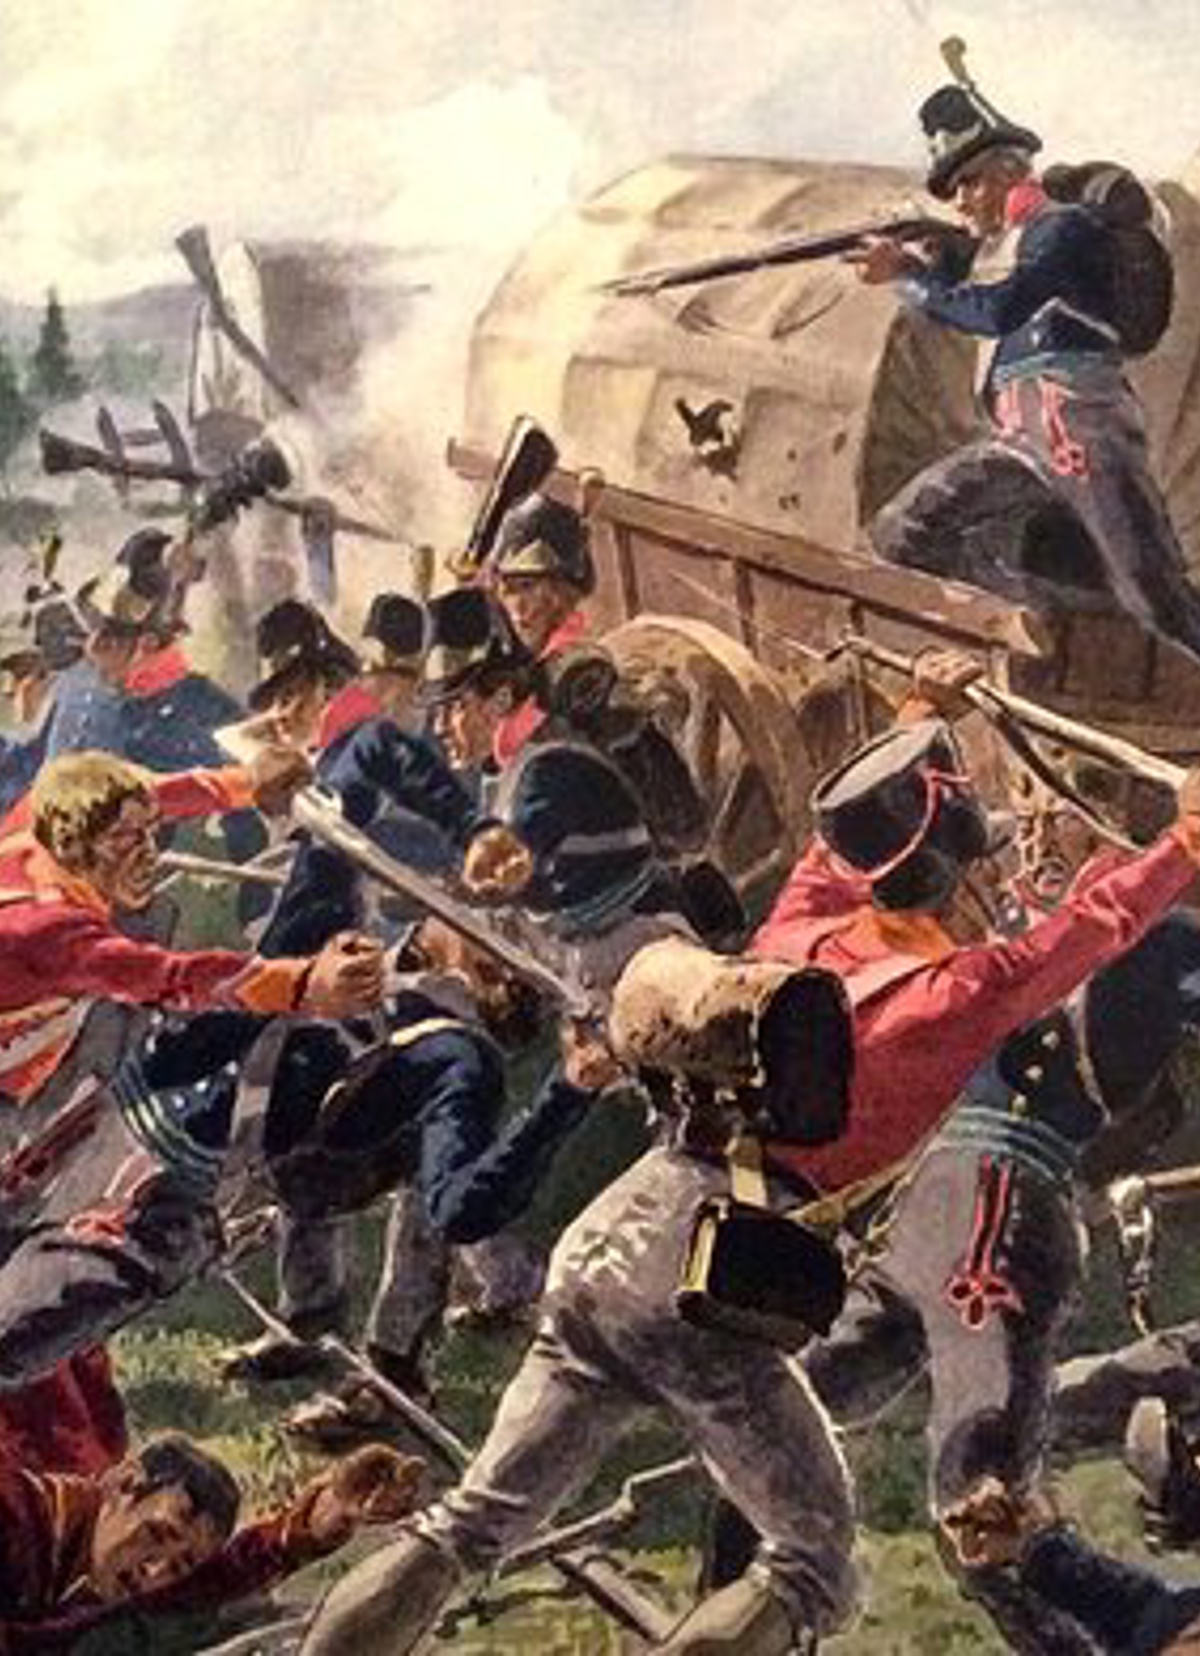 Maleri av et slag med soldater i blå uniformer som kjemper mot soldater i røde uniformer. Soldatene har våpen.